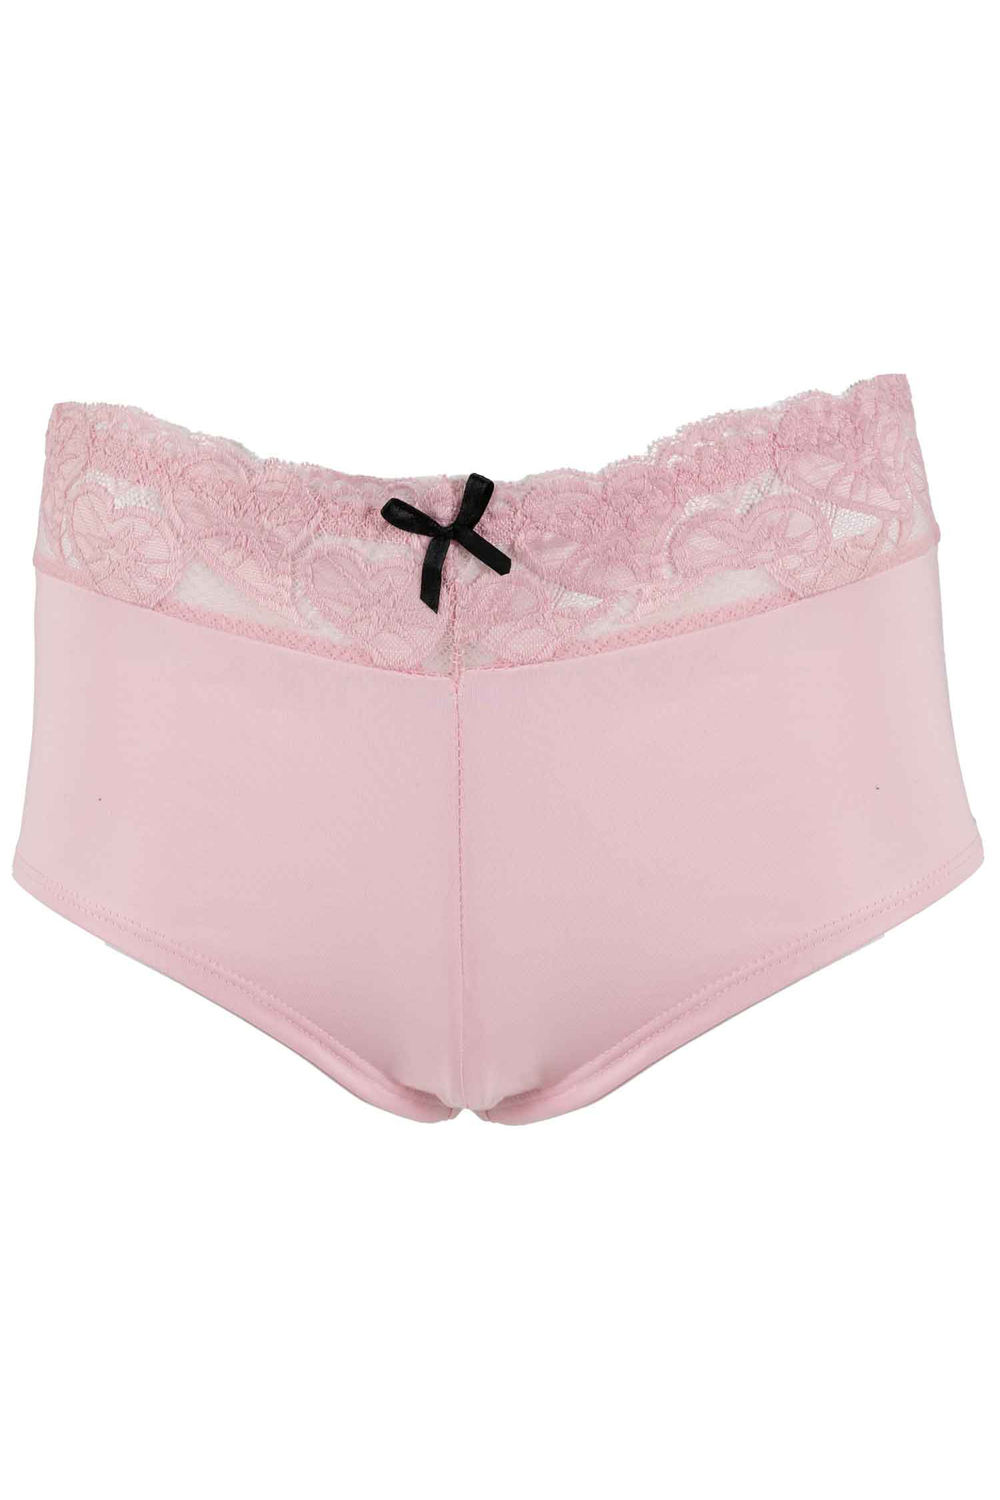 Buy 5-Pack Cotton Tea-Dye Boyshort Panties - Order Panties online  5000007875 - PINK US